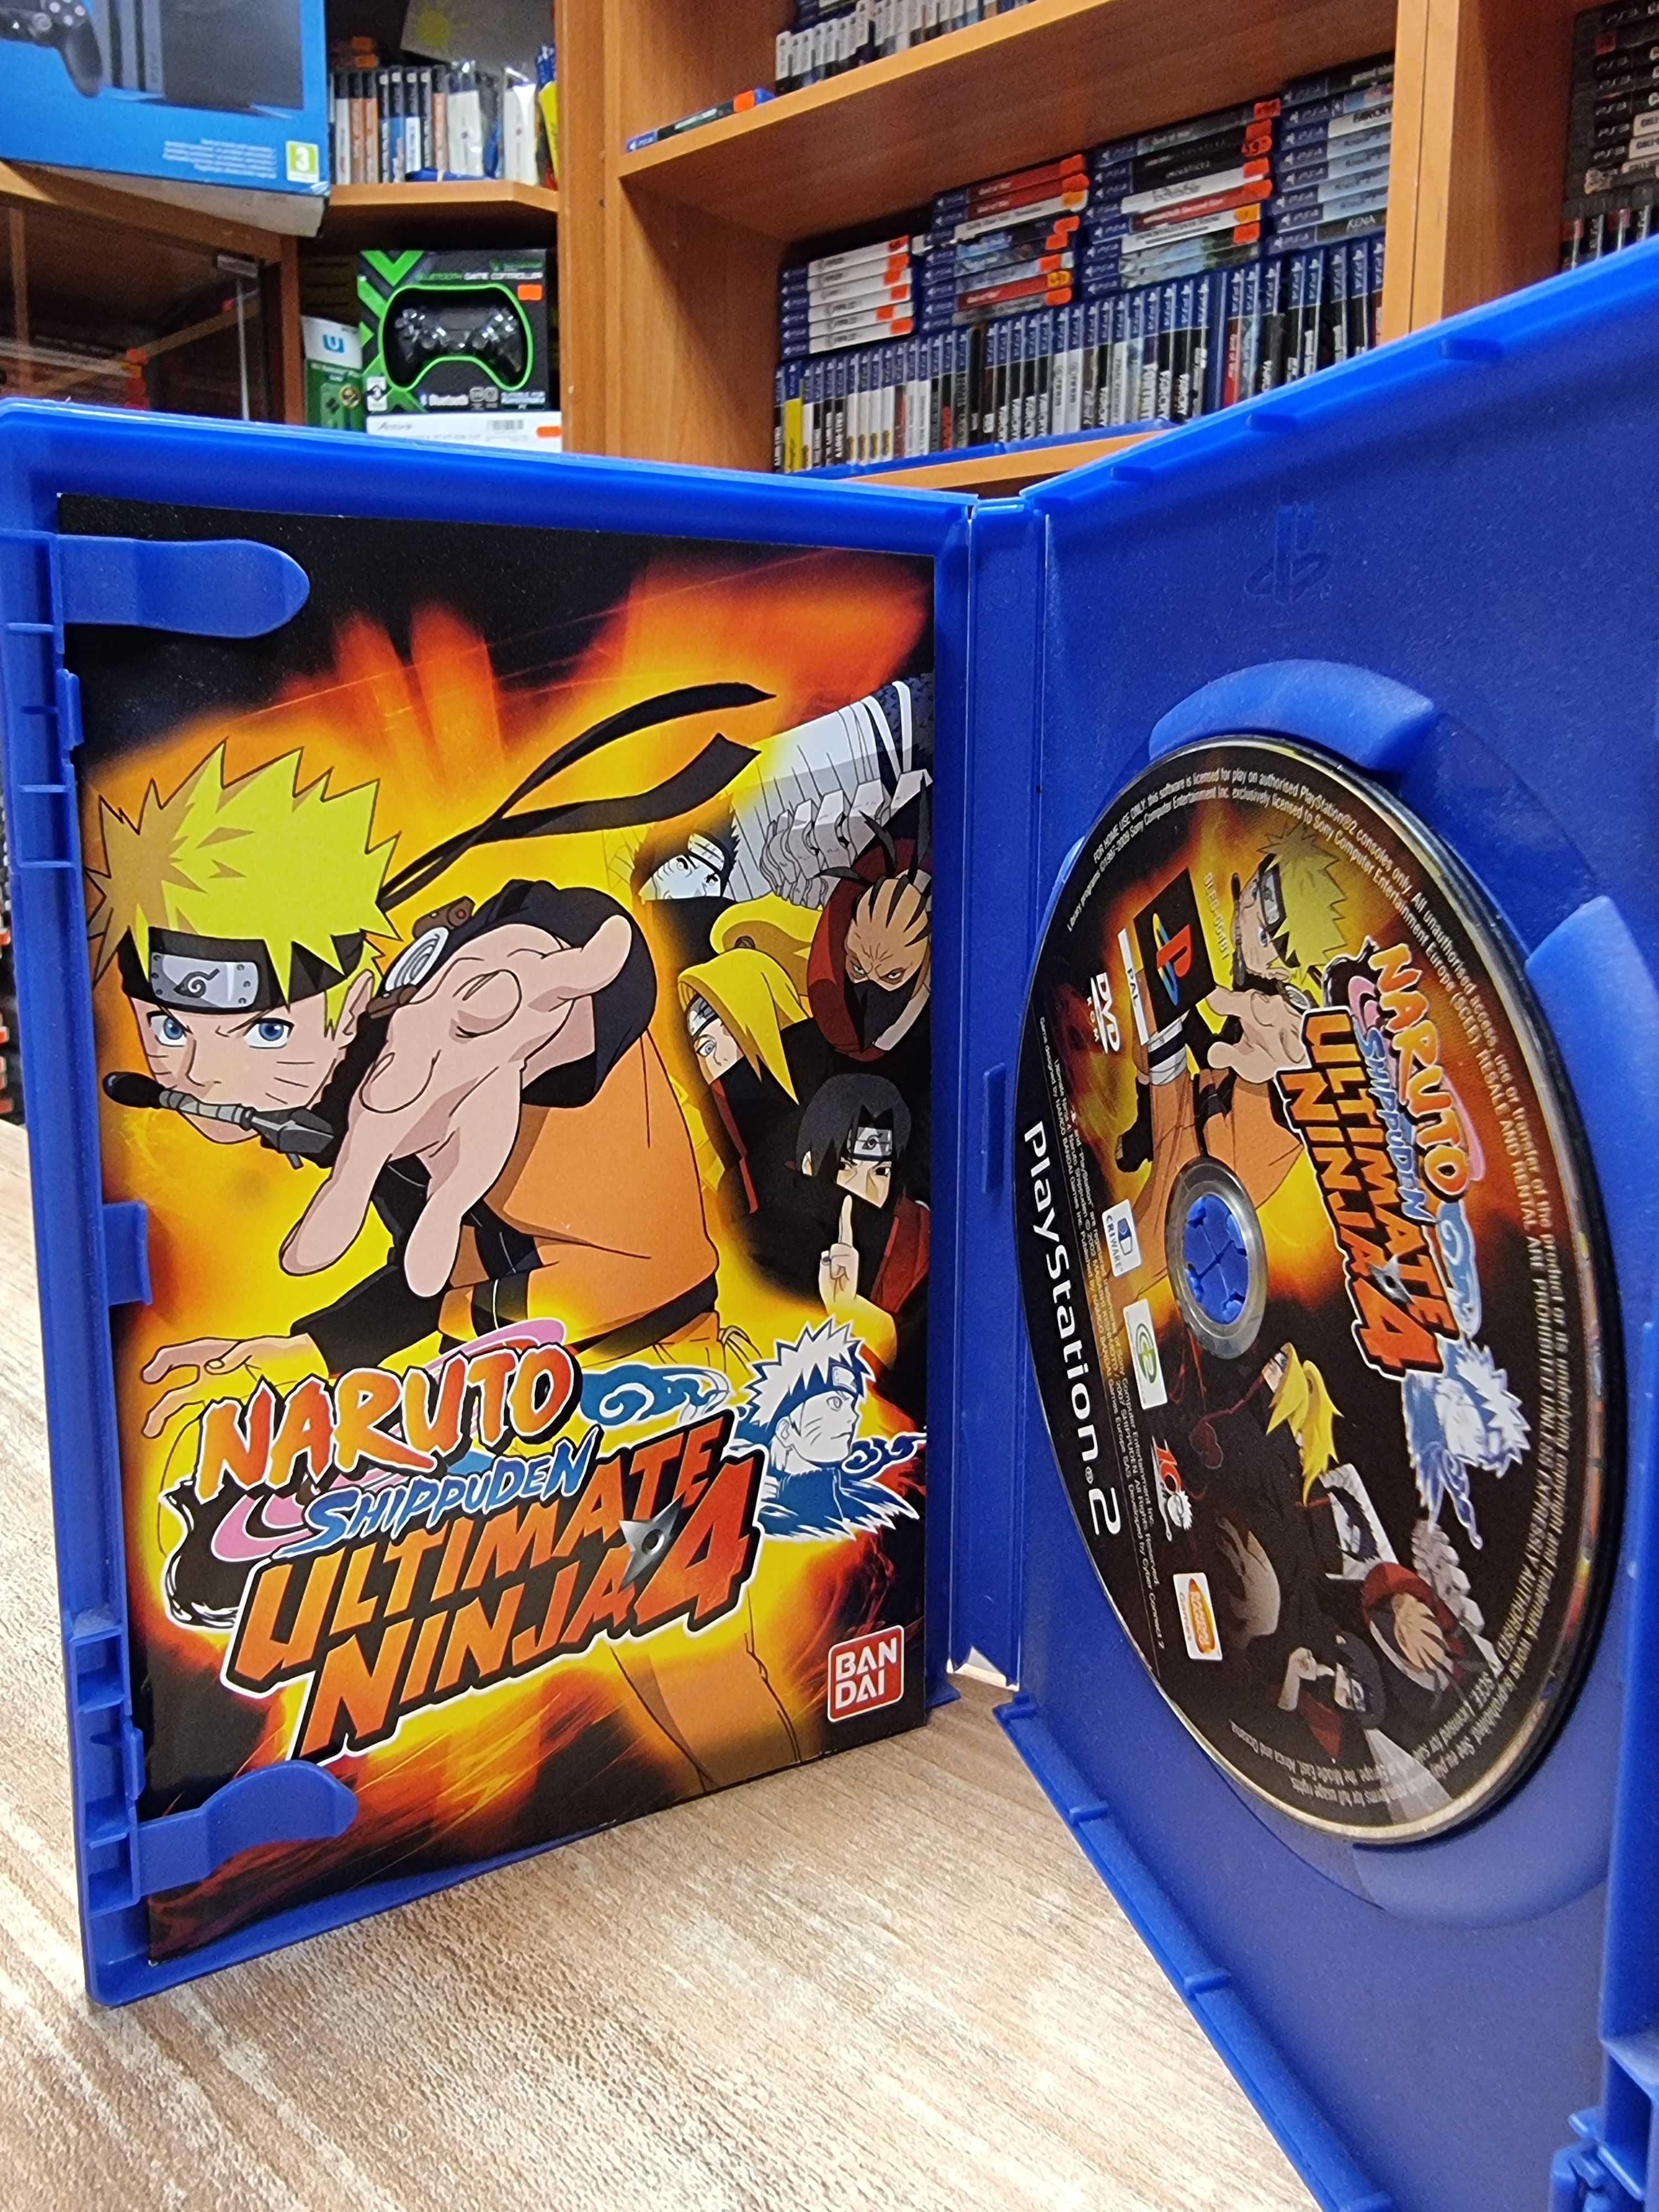 Ultimate Ninja 4: Naruto Shippuden PS2, Sklep Wysyłka Wymiana